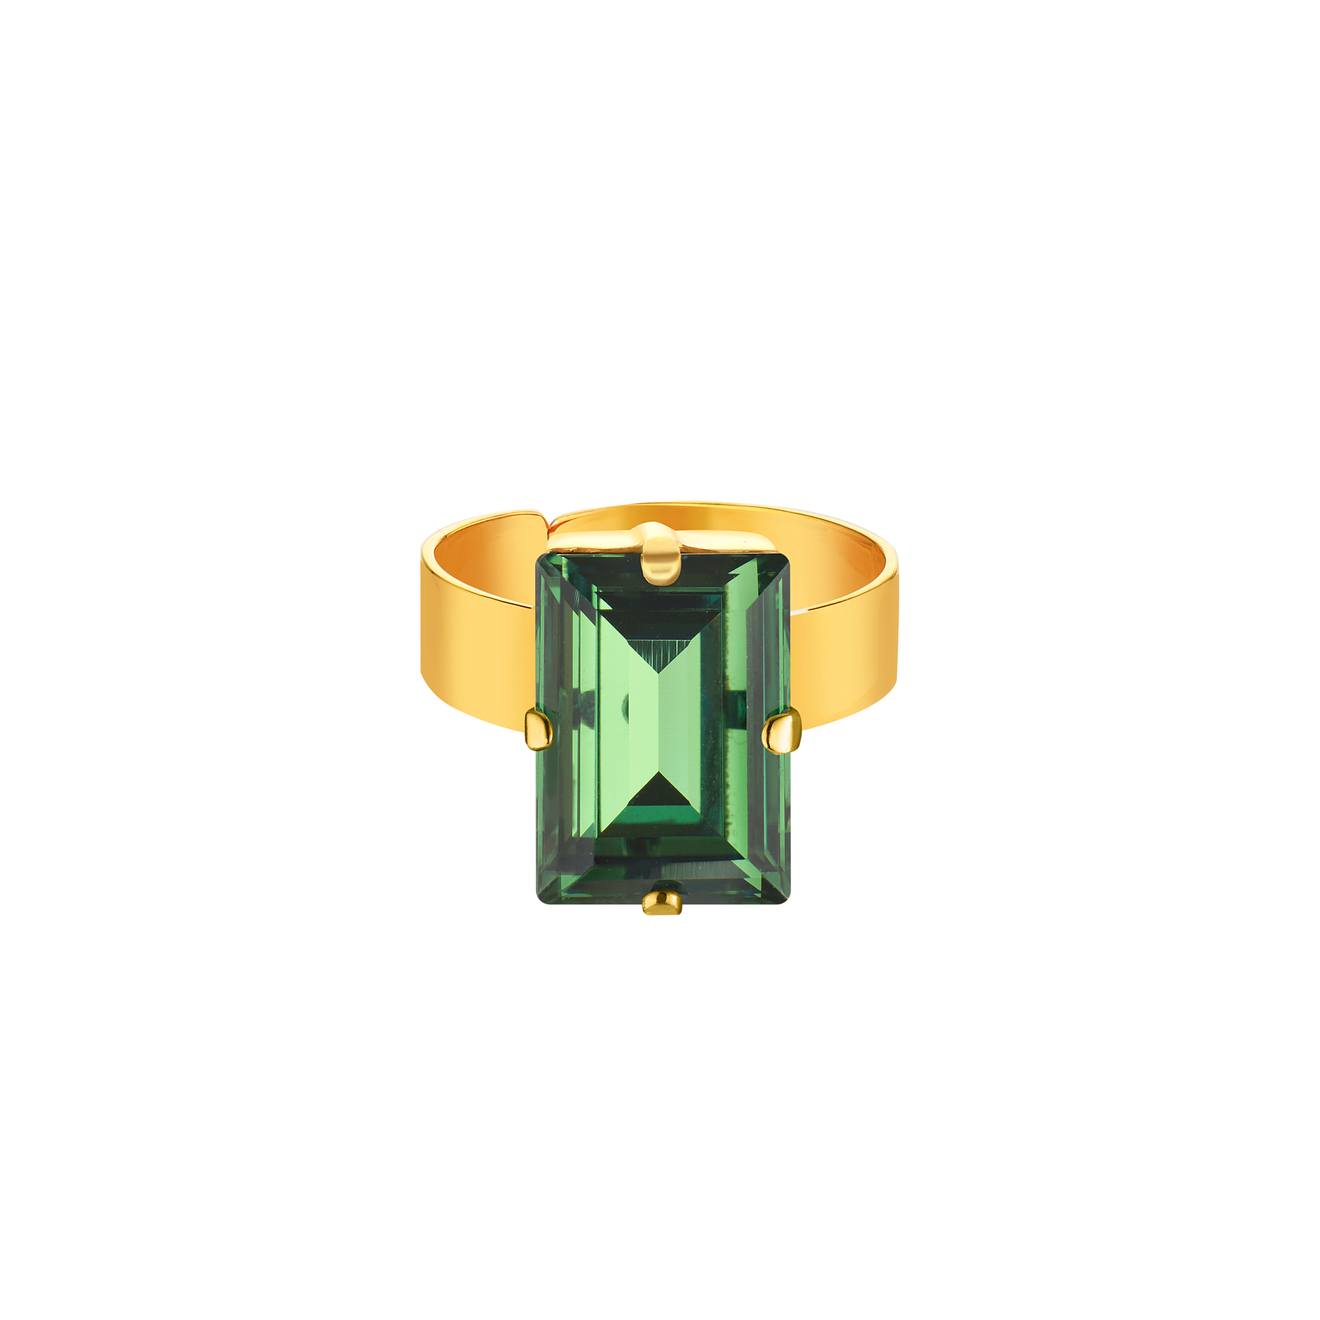 Phenomenal Studio Позолоченное кольцо с регулируемым размером и крупным кристаллом Baguette Erinite Gold phenomenal studio позолоченное колье с кристаллом в форме сердца sweetheart green